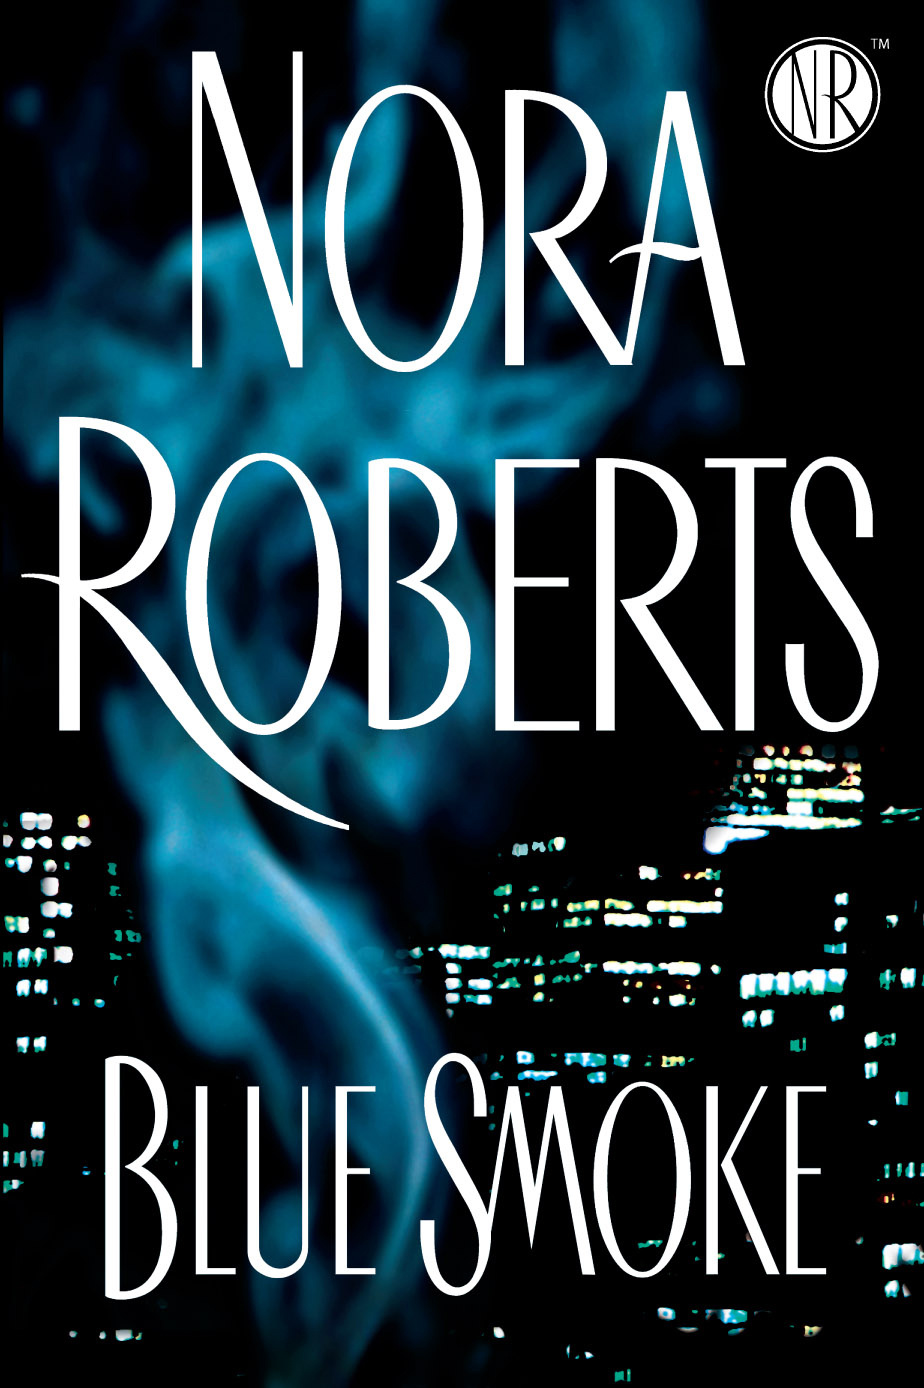 Blue Smoke (2009) by Nora Roberts